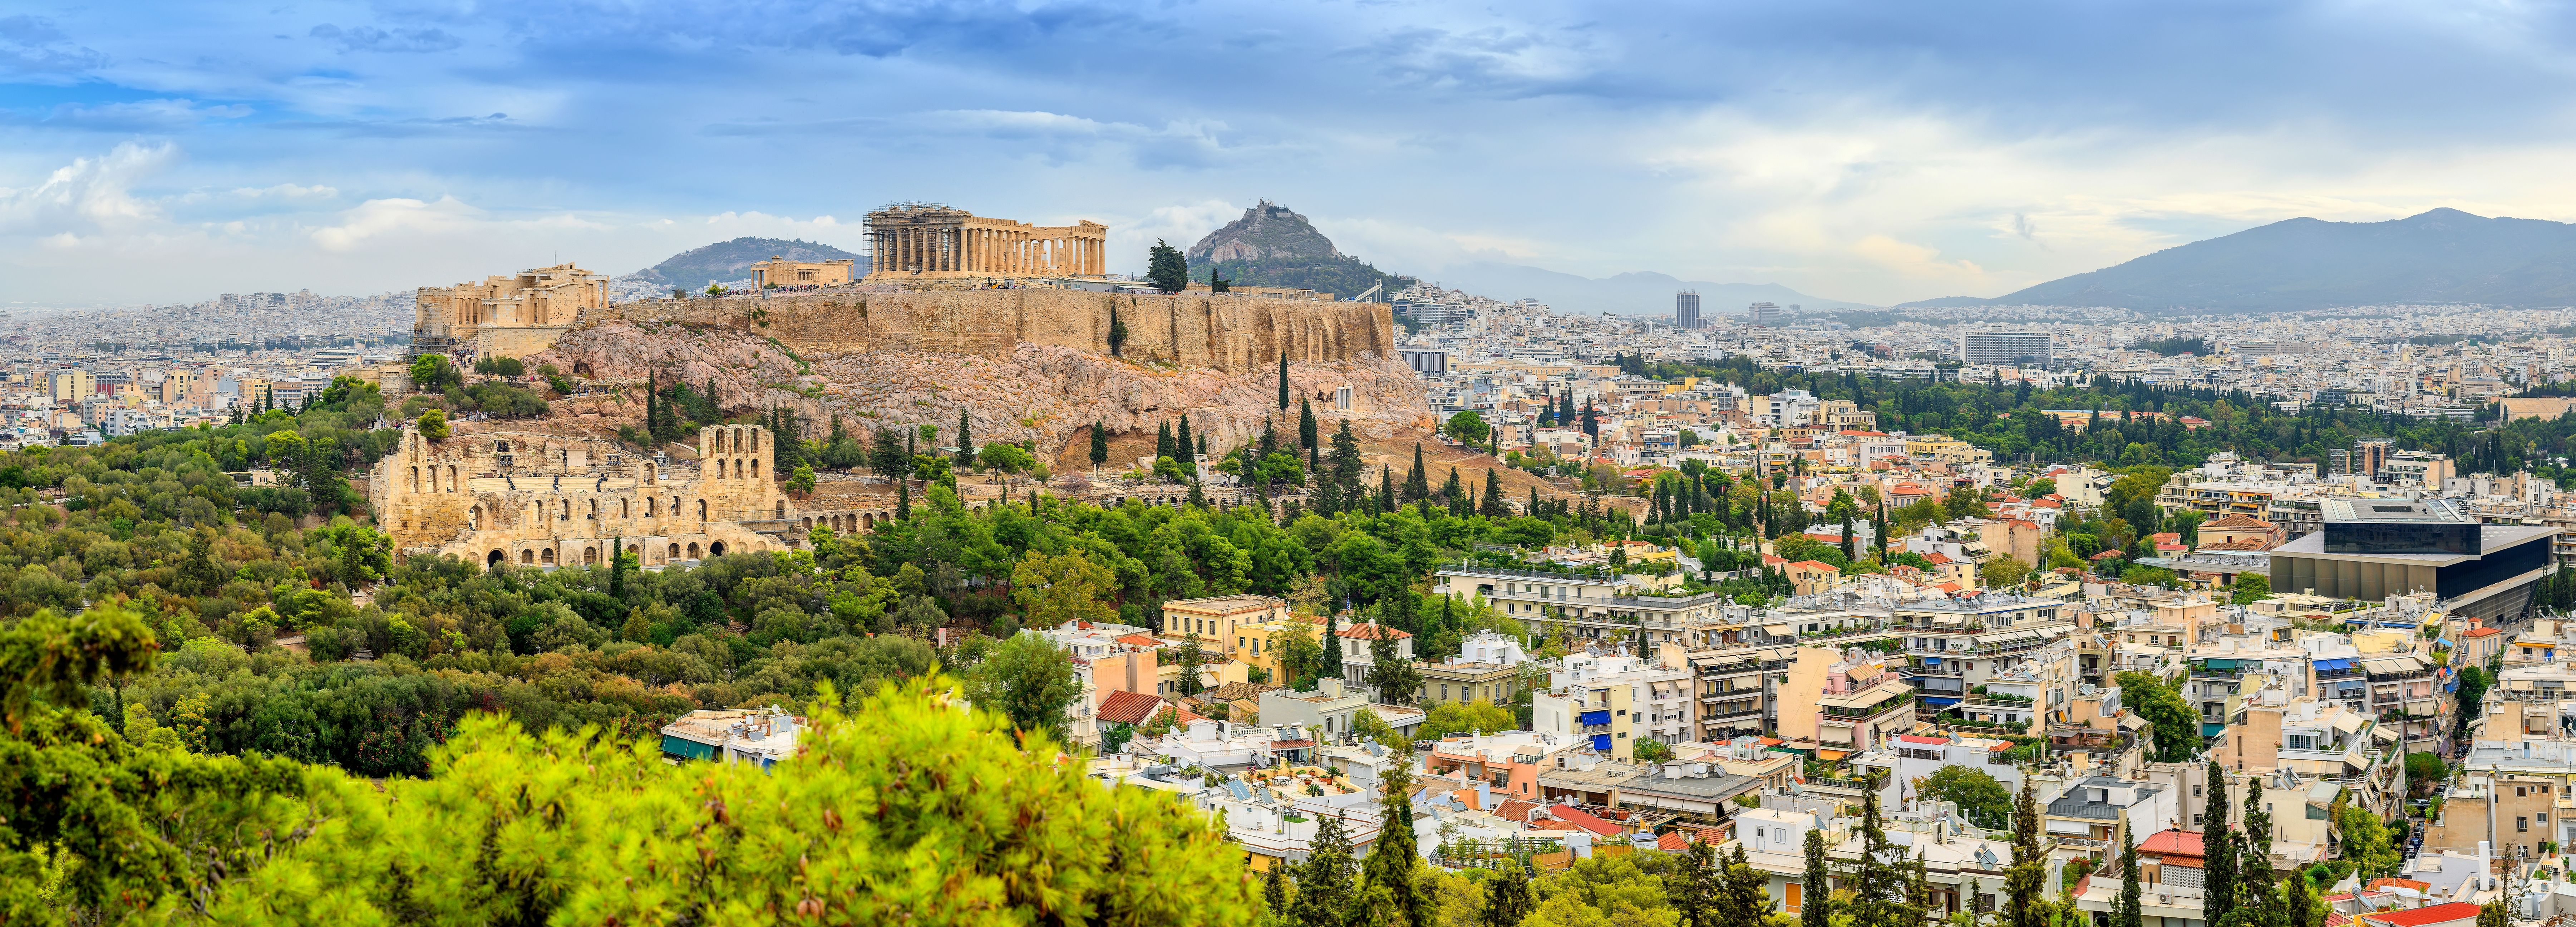 Athens - Europe’s Leading Cultural City Destination 2023 - Acropolis